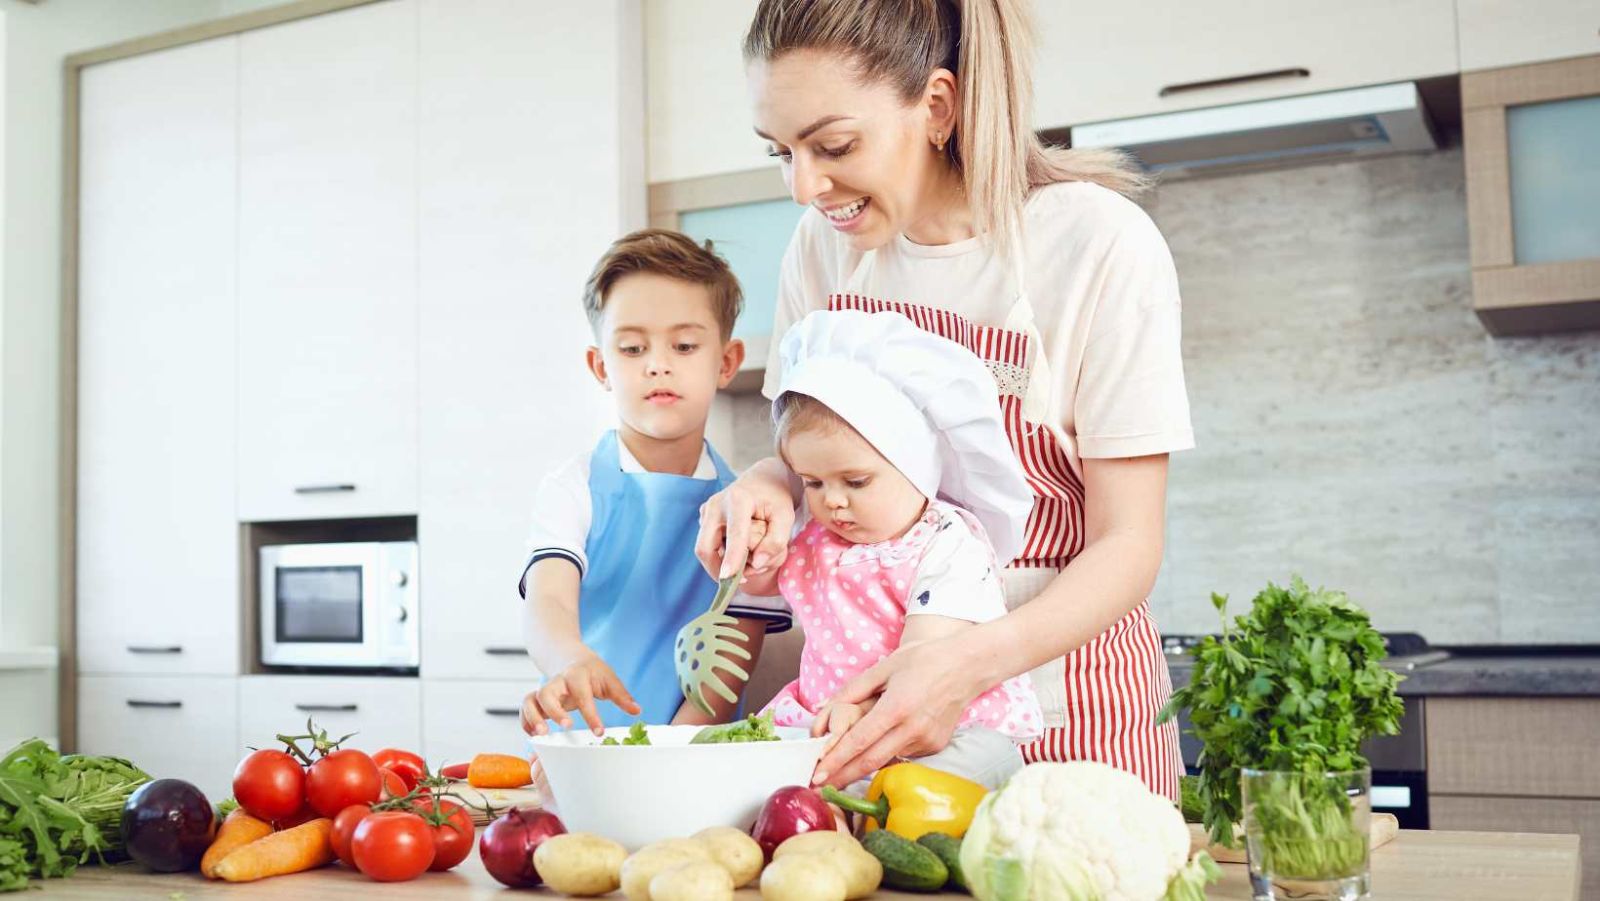 Les comportements alimentaires des parents façonnent ceux des enfants, une étude le confirme